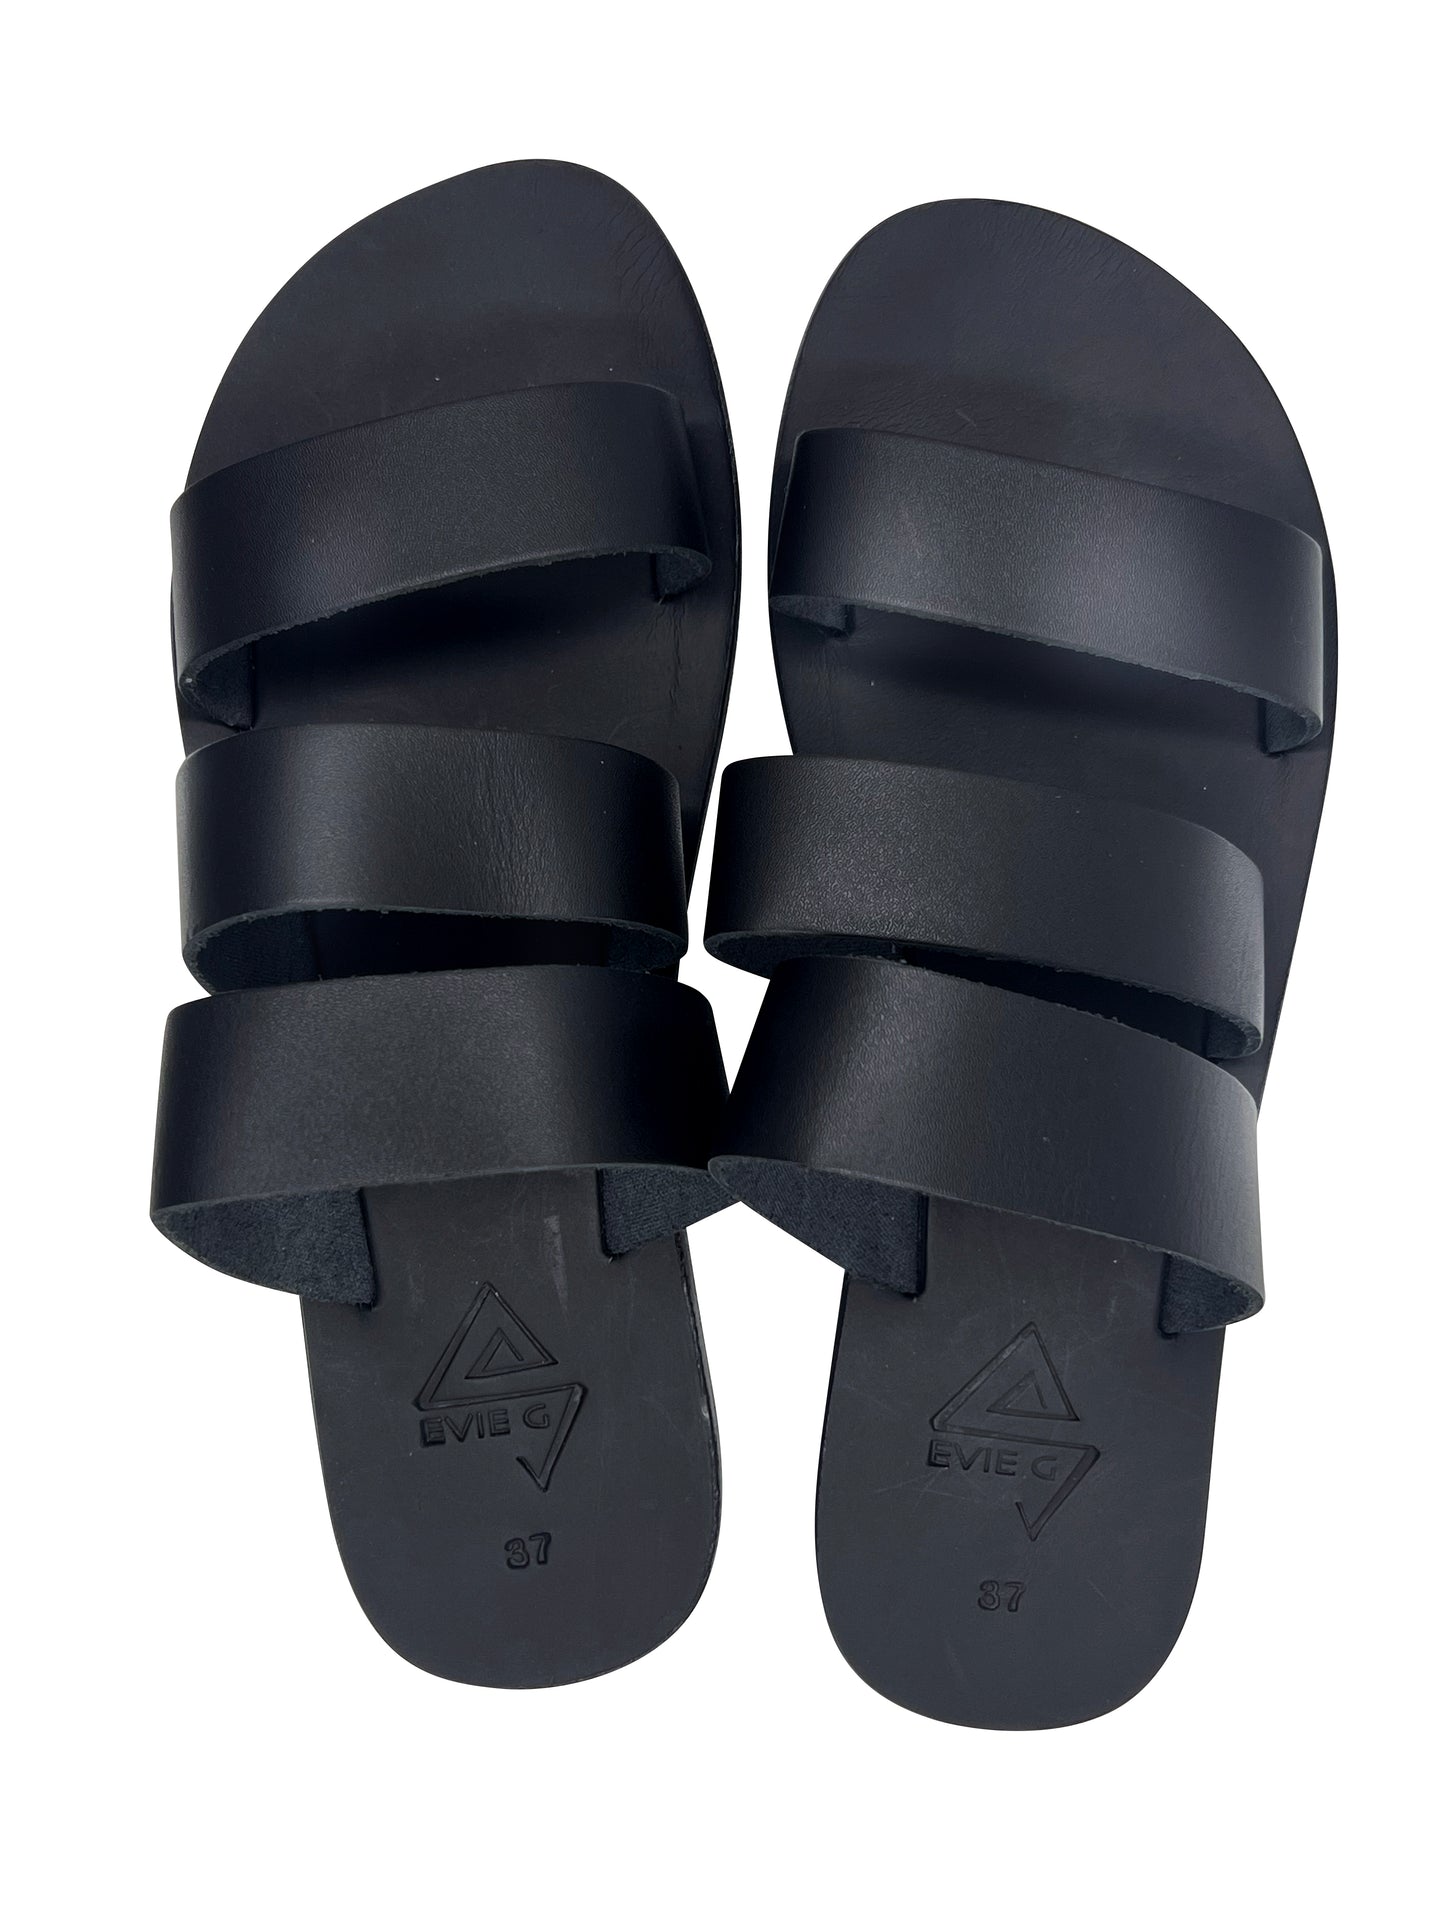 EVIE G Epsilon Black Sandals